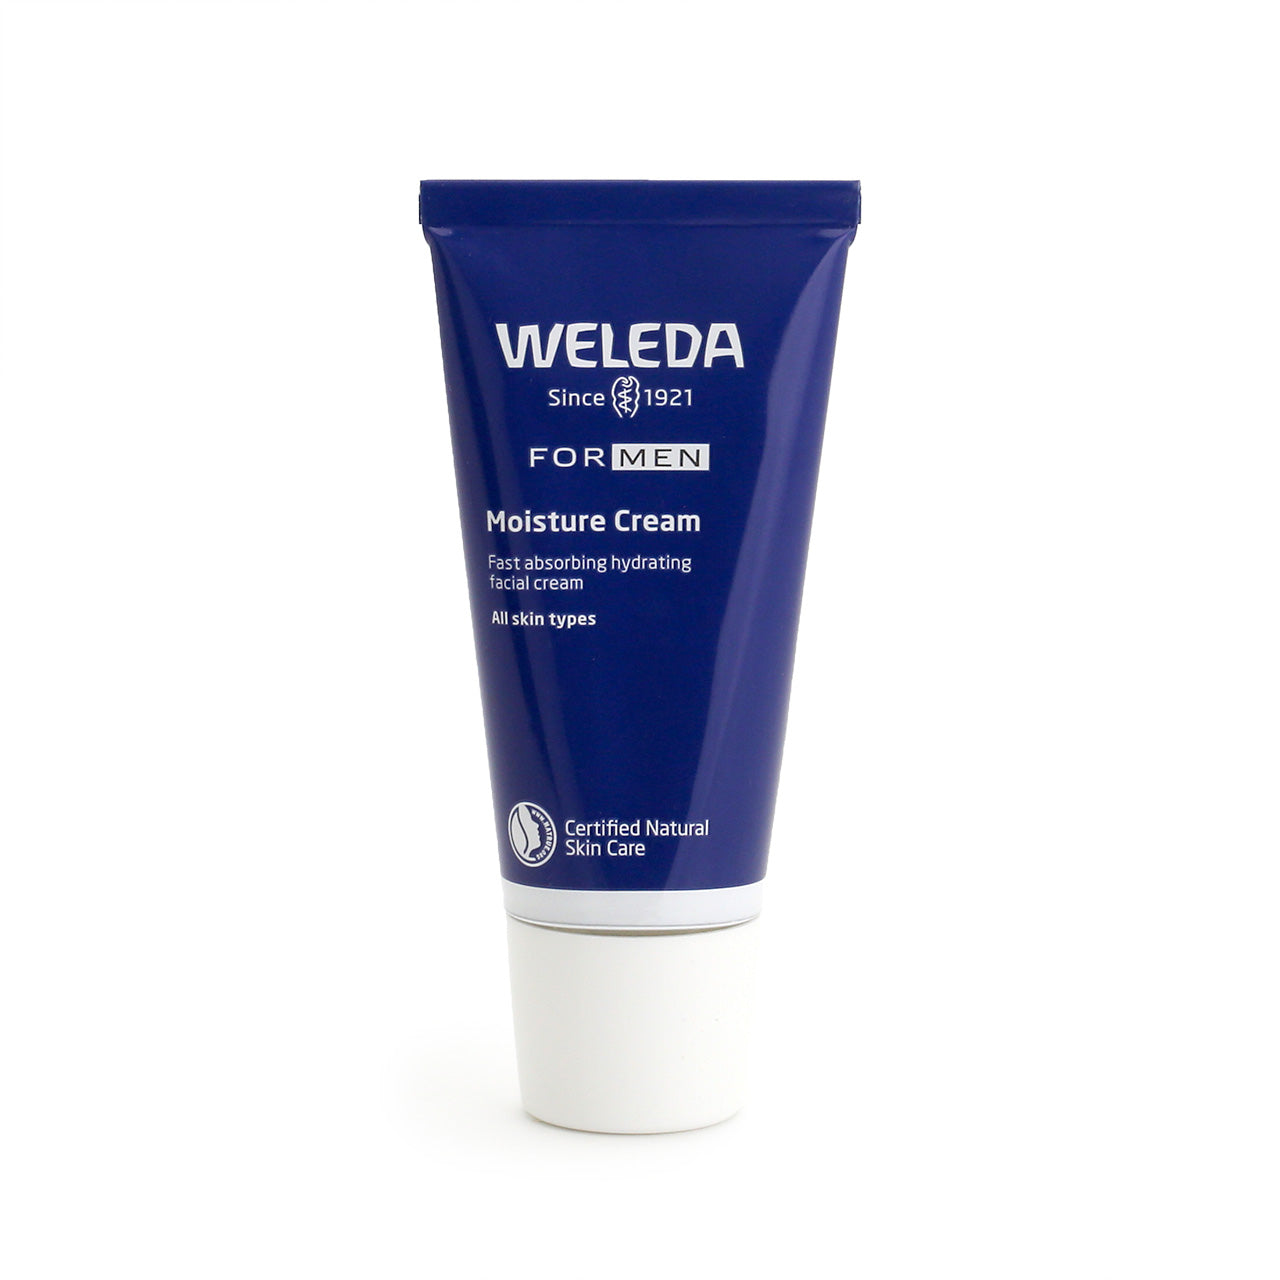 Weleda For Men Moisture Cream in dark blue tube with white cap